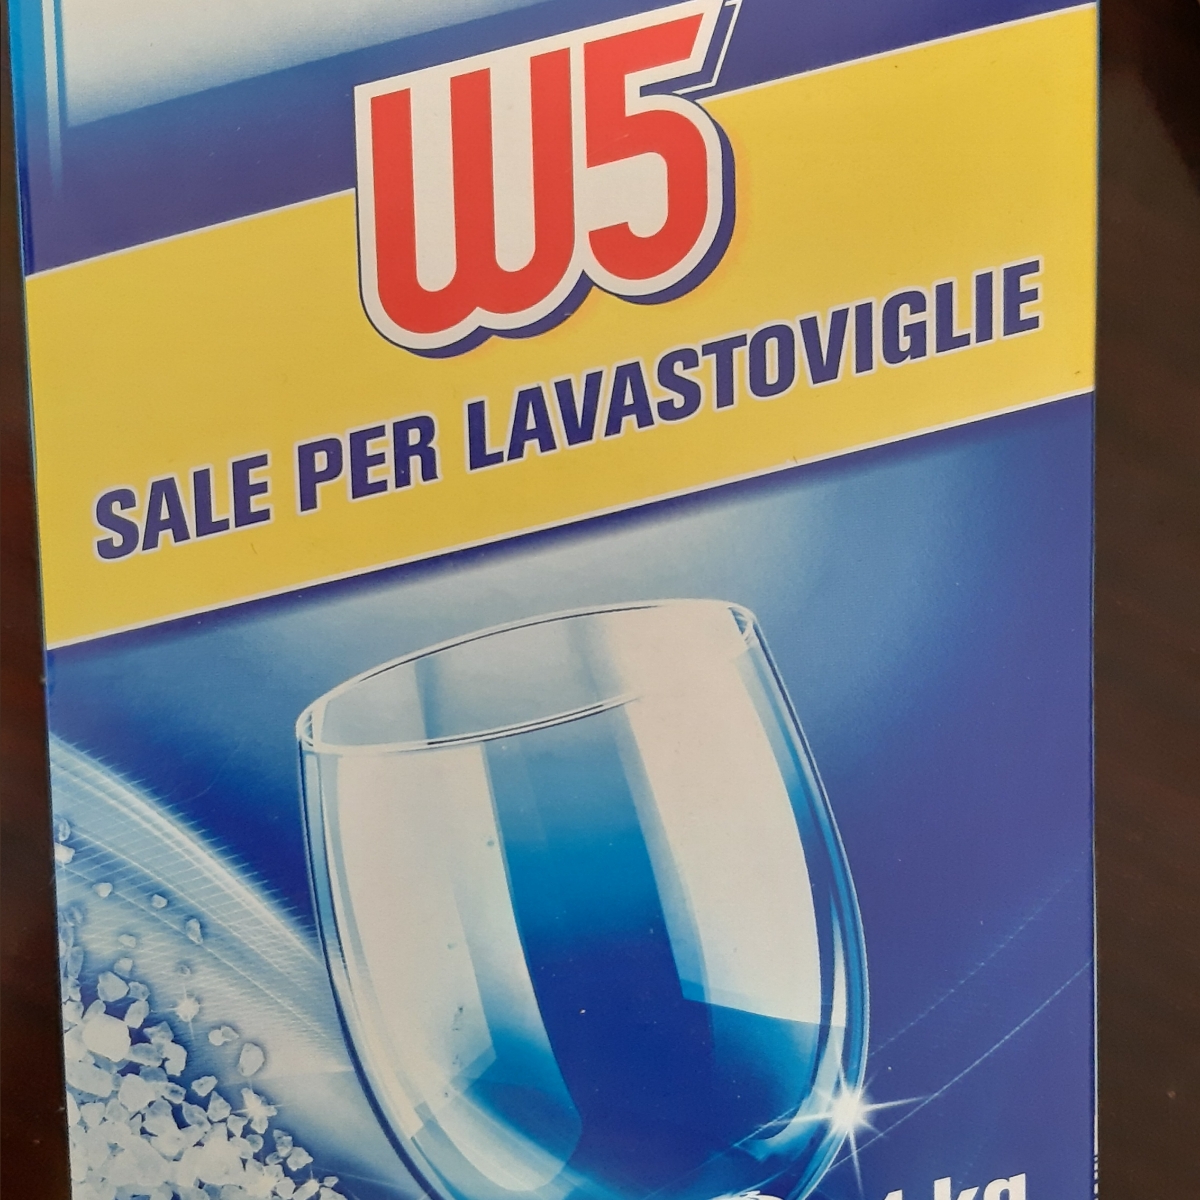 W5 Sale Per Lavastoviglie Reviews | abillion